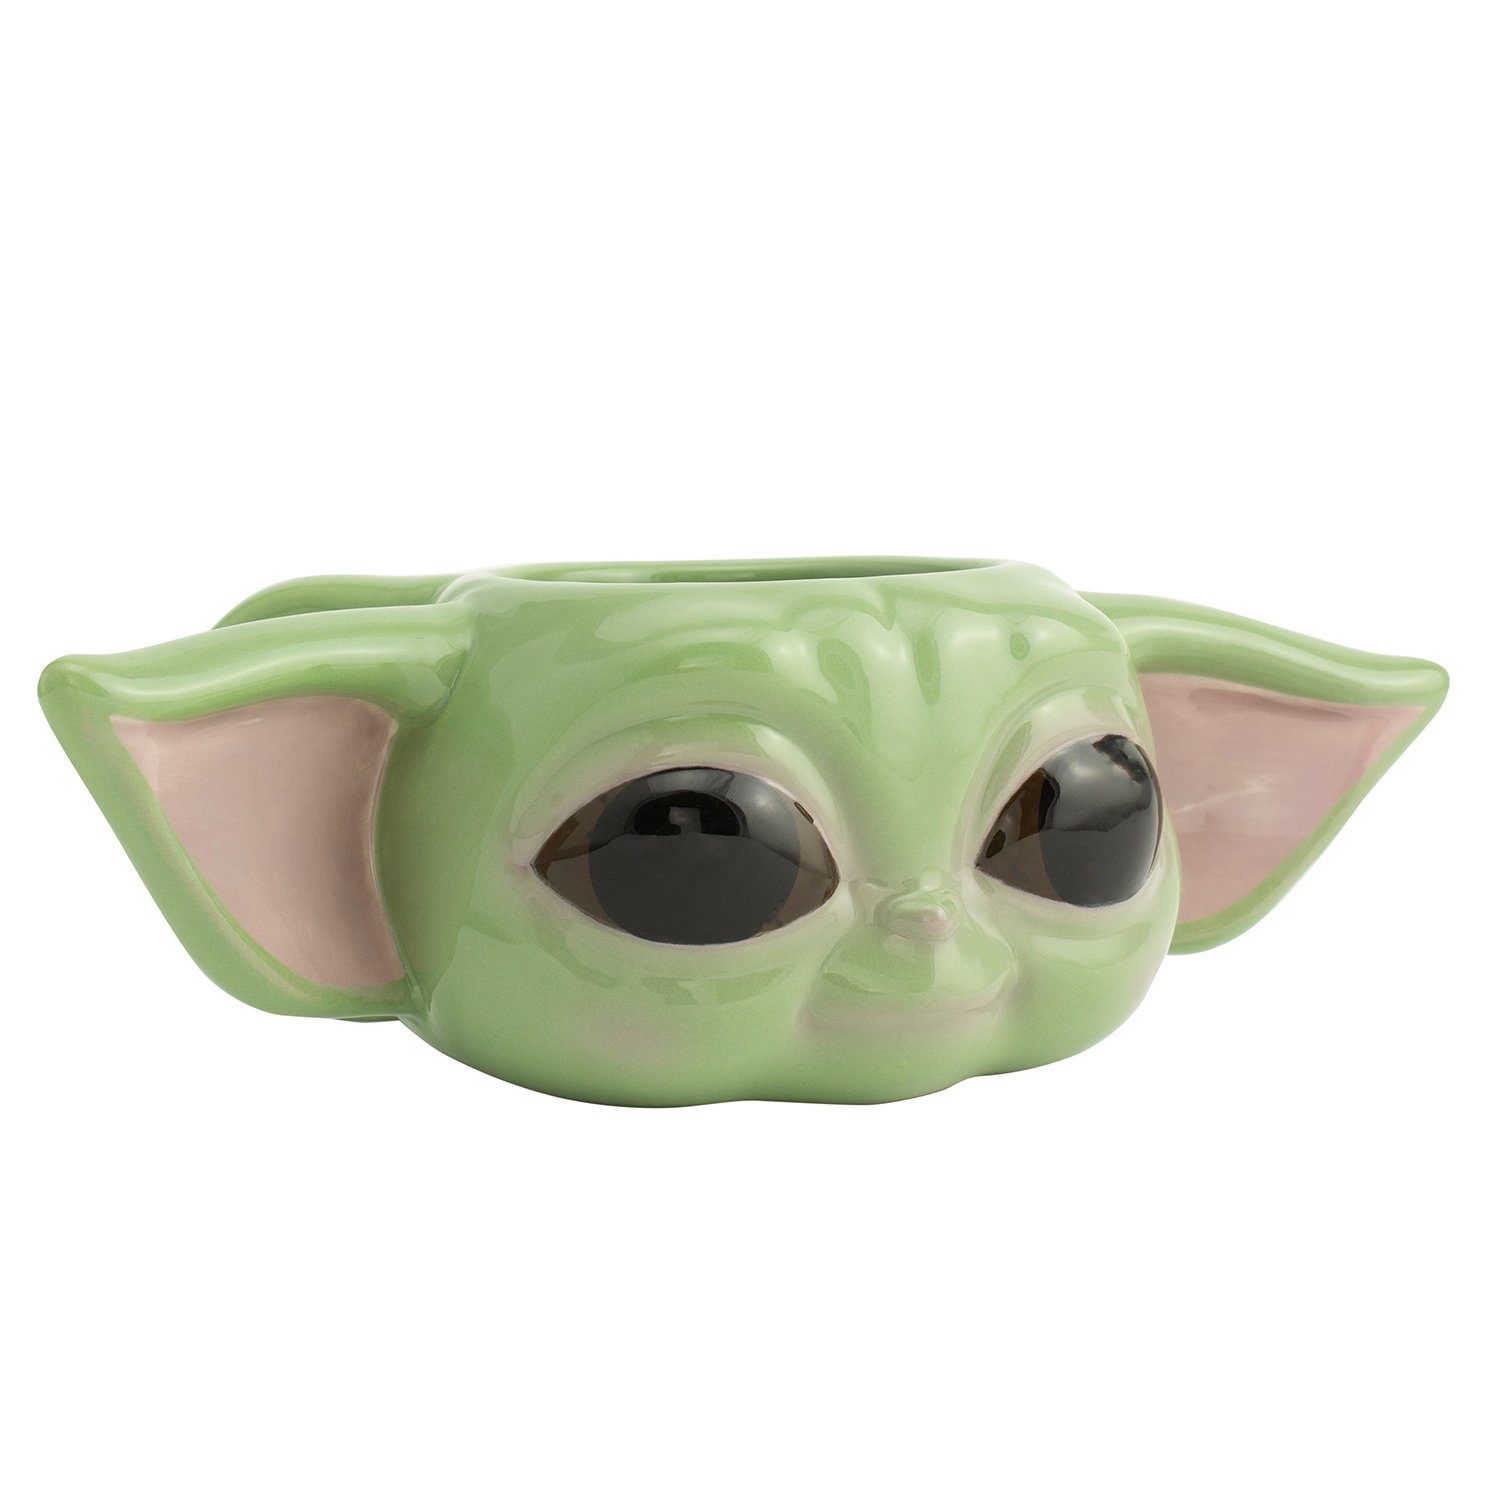 Paladone Tasse The Mandalorian Tasse 3D Baby Yoda